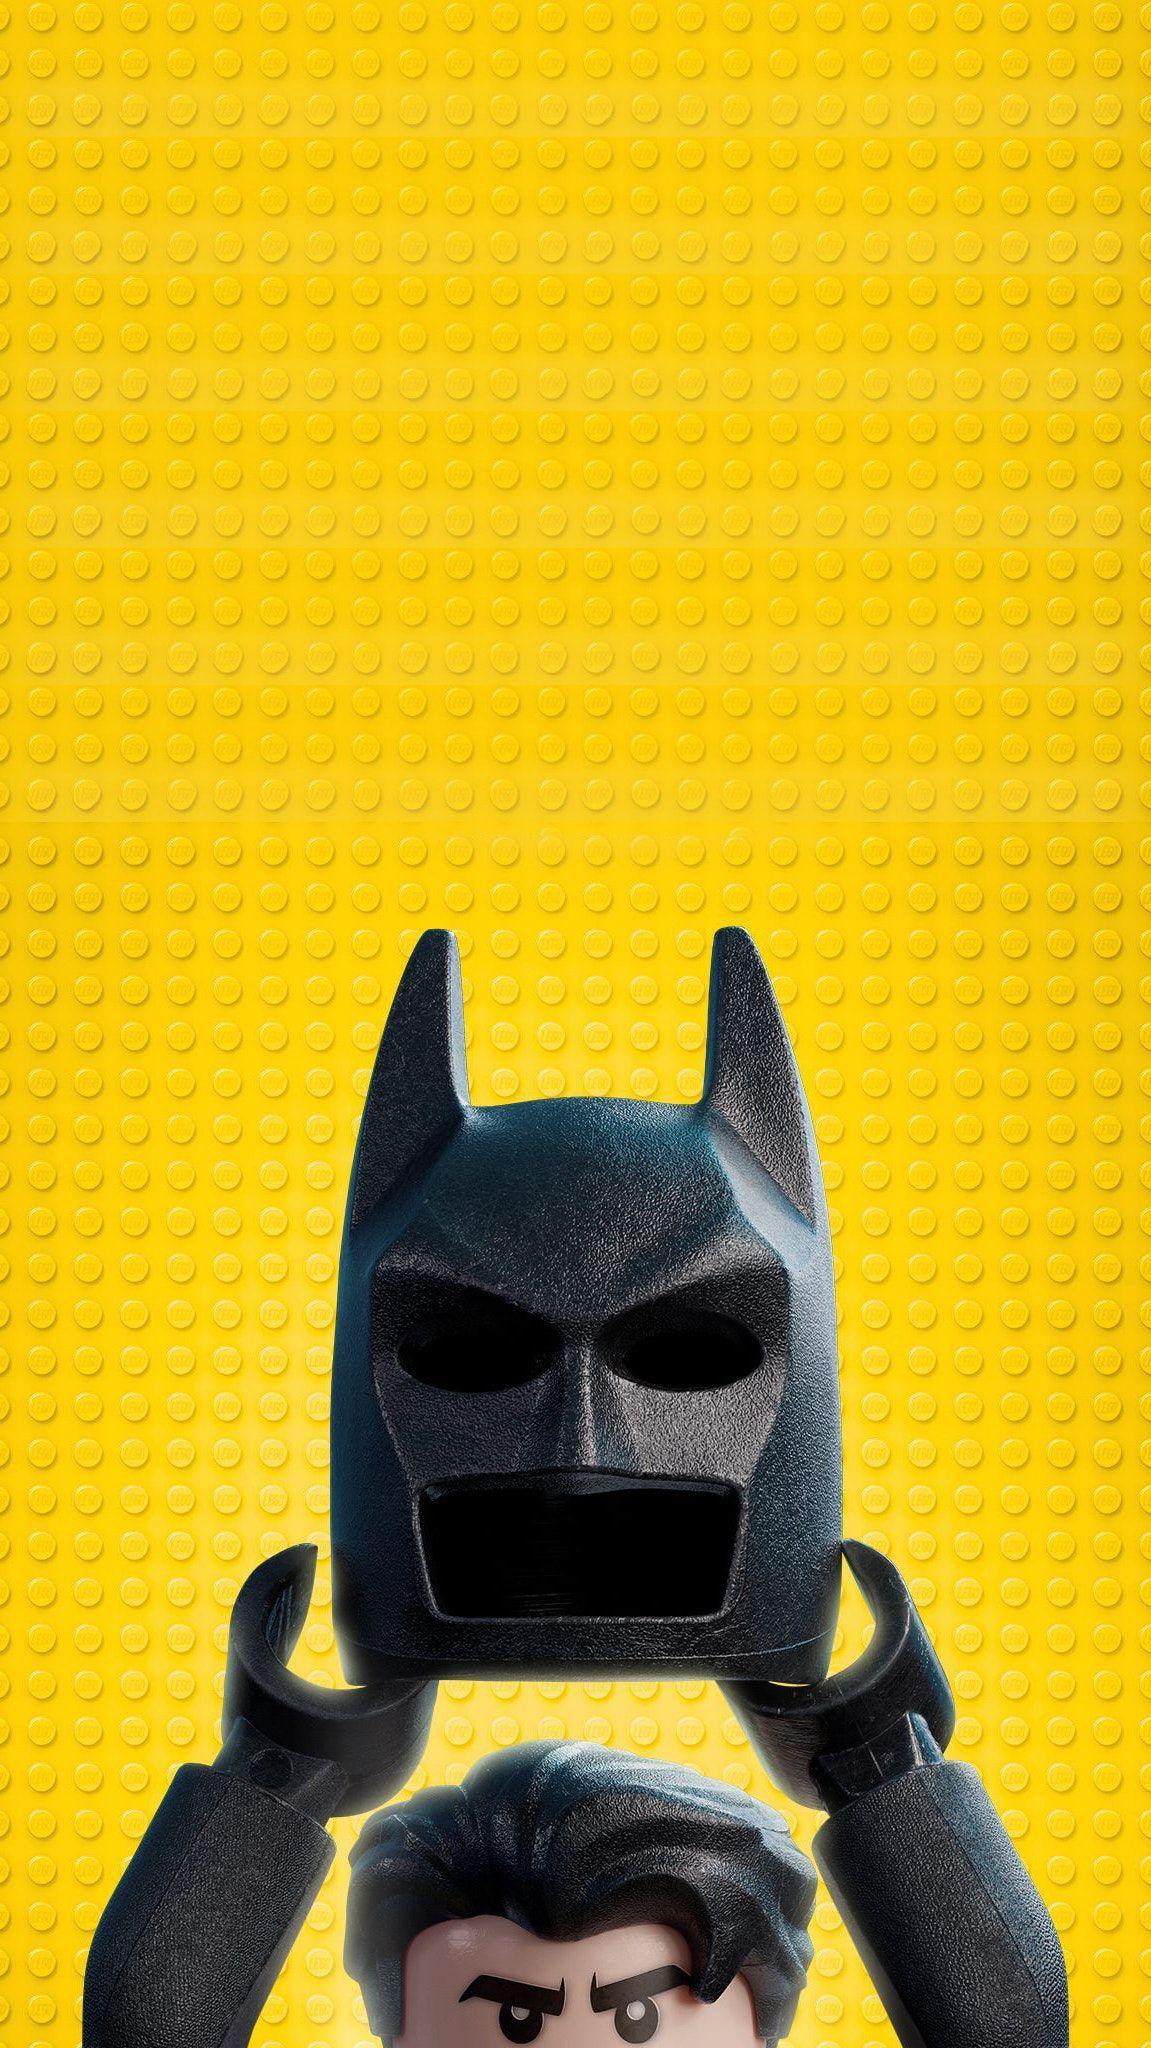 Lego Batman Android Wallpapers - Wallpaper Cave